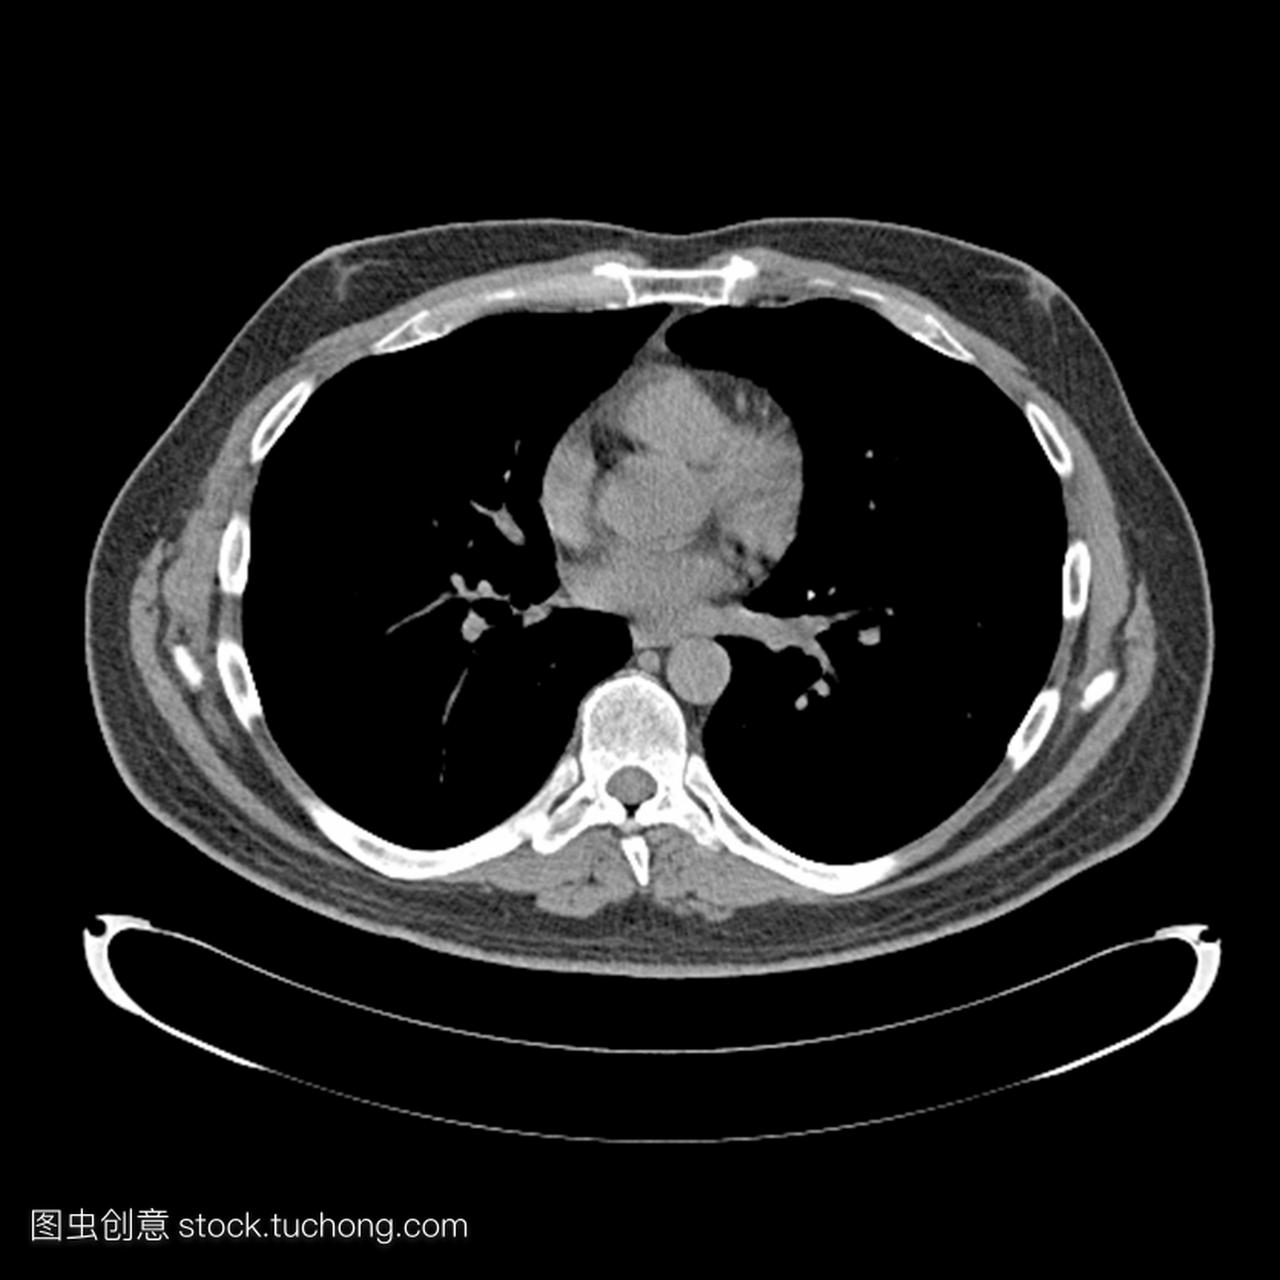 x射线计算机断层扫描ct成人男性胸部横截面